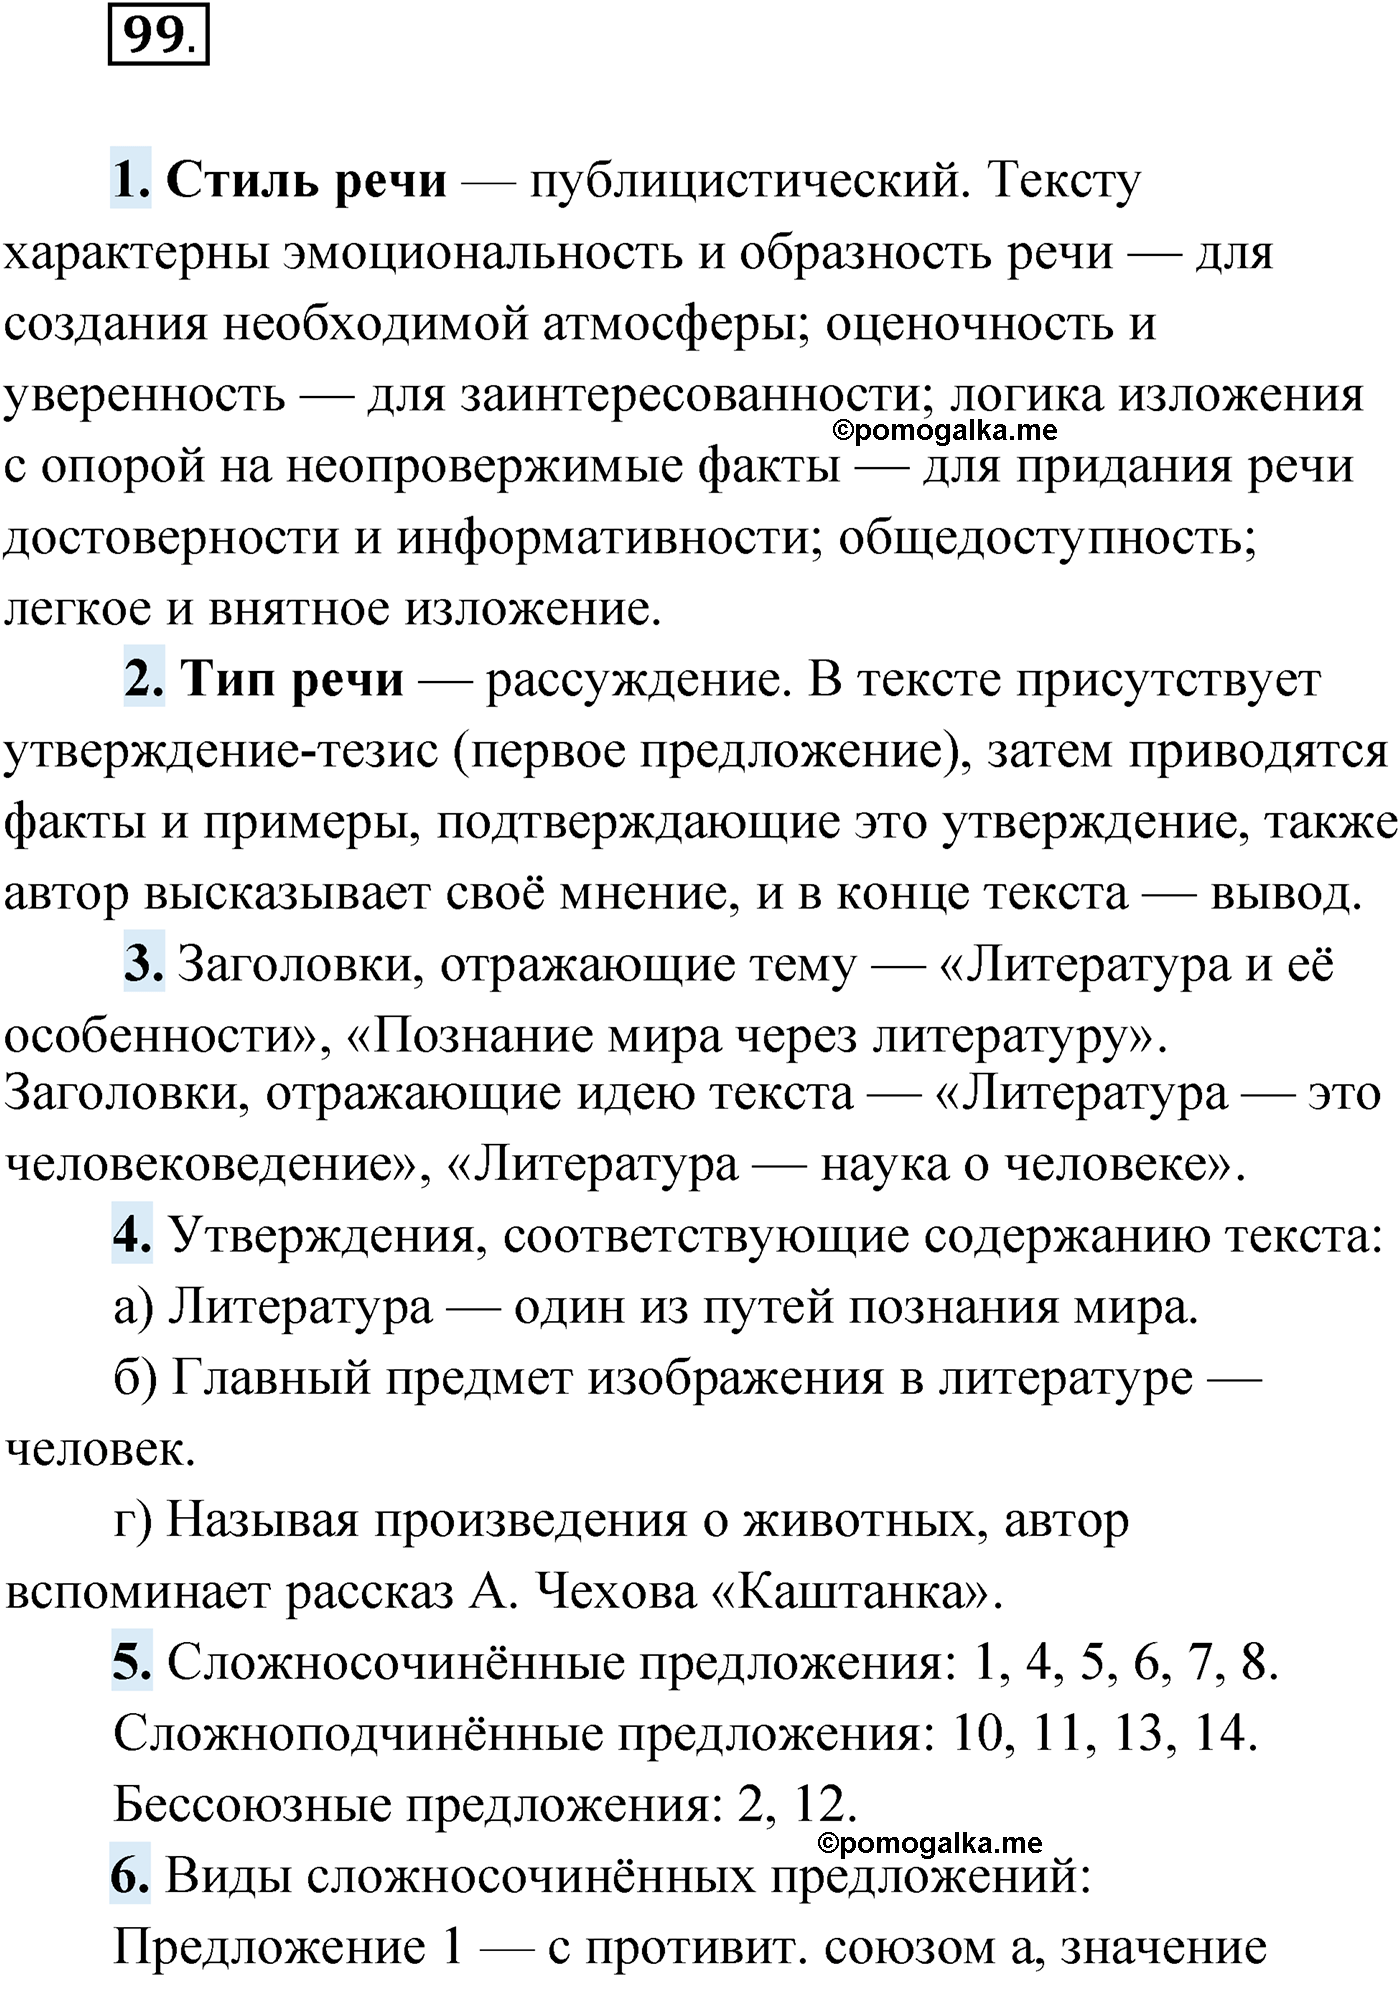 упражнение №99 русский язык 9 класс Мурина 2019 год